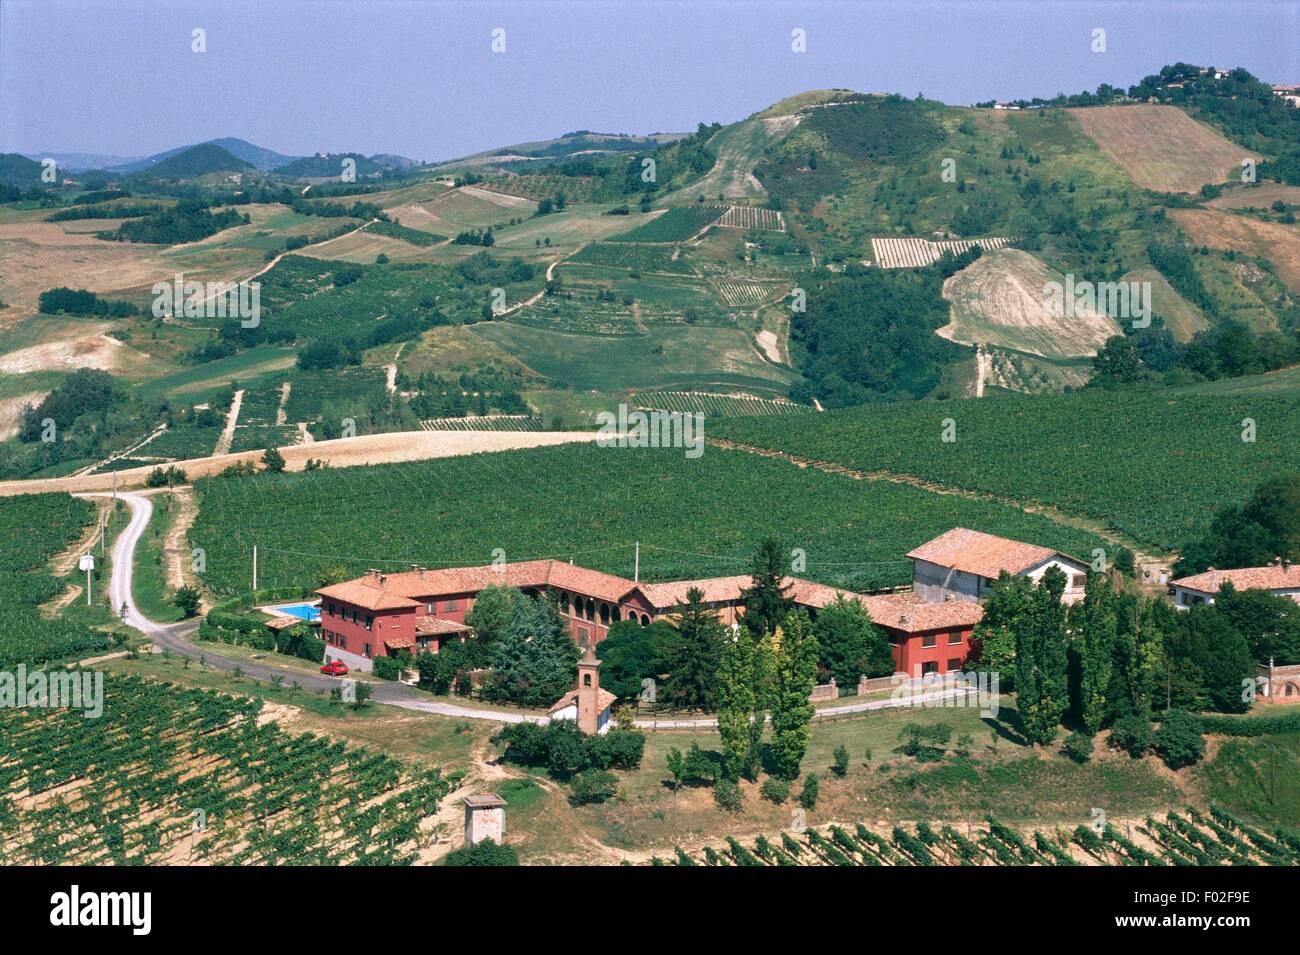 Luftaufnahme Der Weinberge In Der Nahe Von Voghera Provinz Pavia Lombardei Region Italien Stockfotografie Alamy